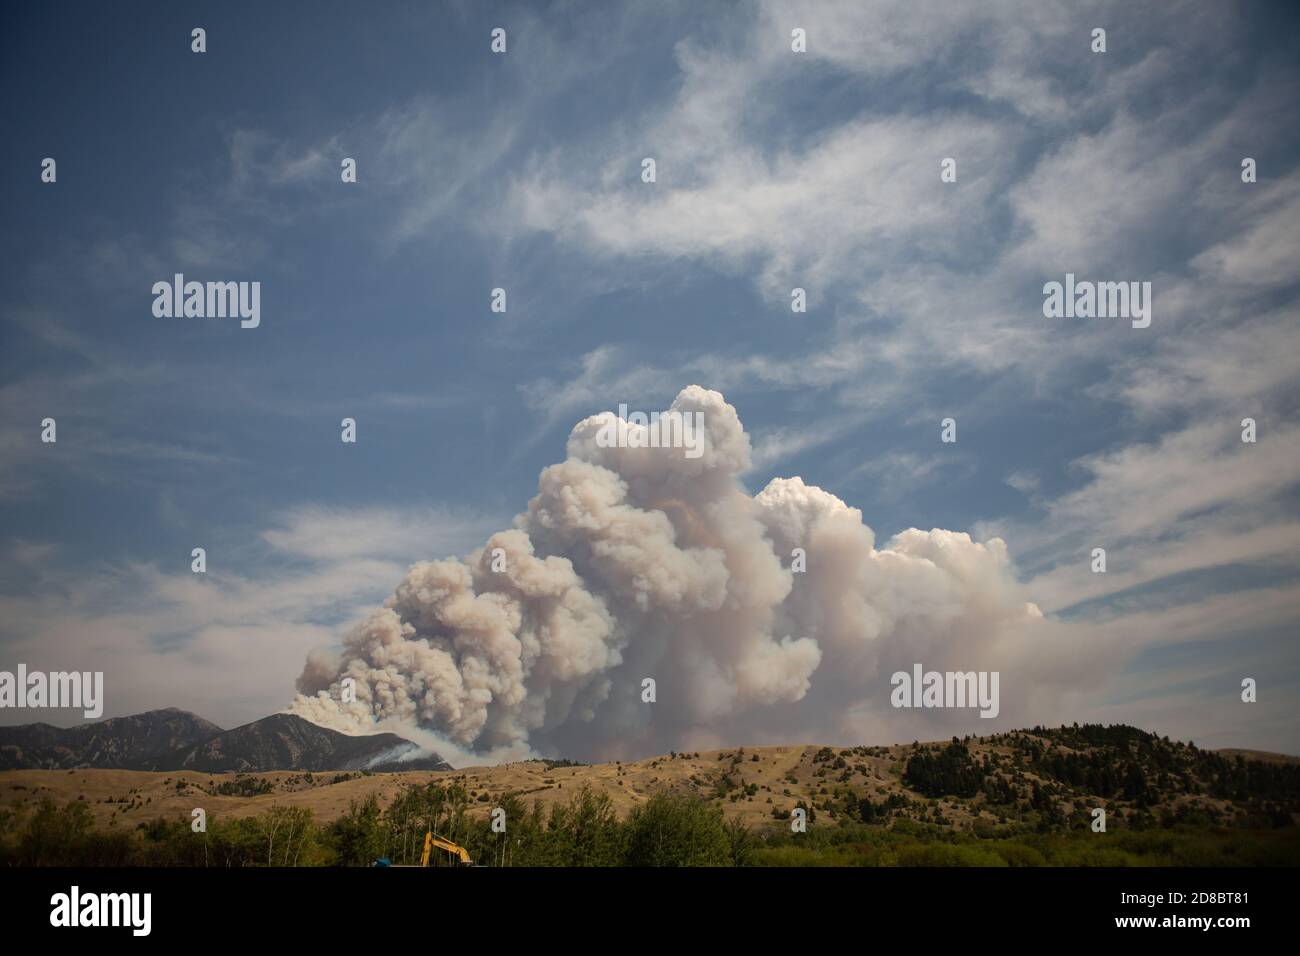 Un incendie massif de forêt aux États-Unis dans les montagnes obligeant des milliers de personnes à évacuer leurs maisons, les feux de forêt qui brûlent se propagent rapidement dans le cou Banque D'Images